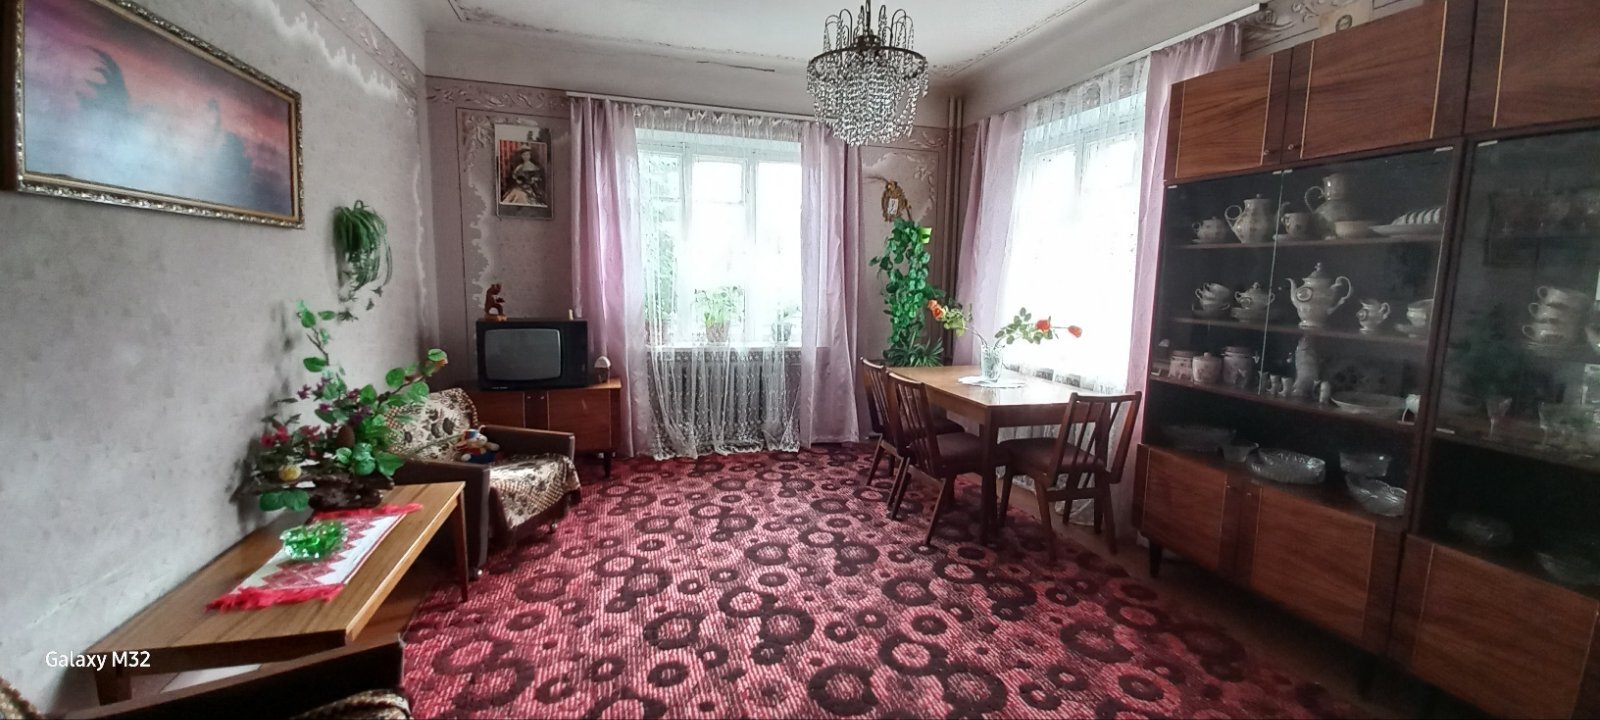 Продажа дома 141.4 м², Старицкого пер., Кічкарівка, м.Луцьк